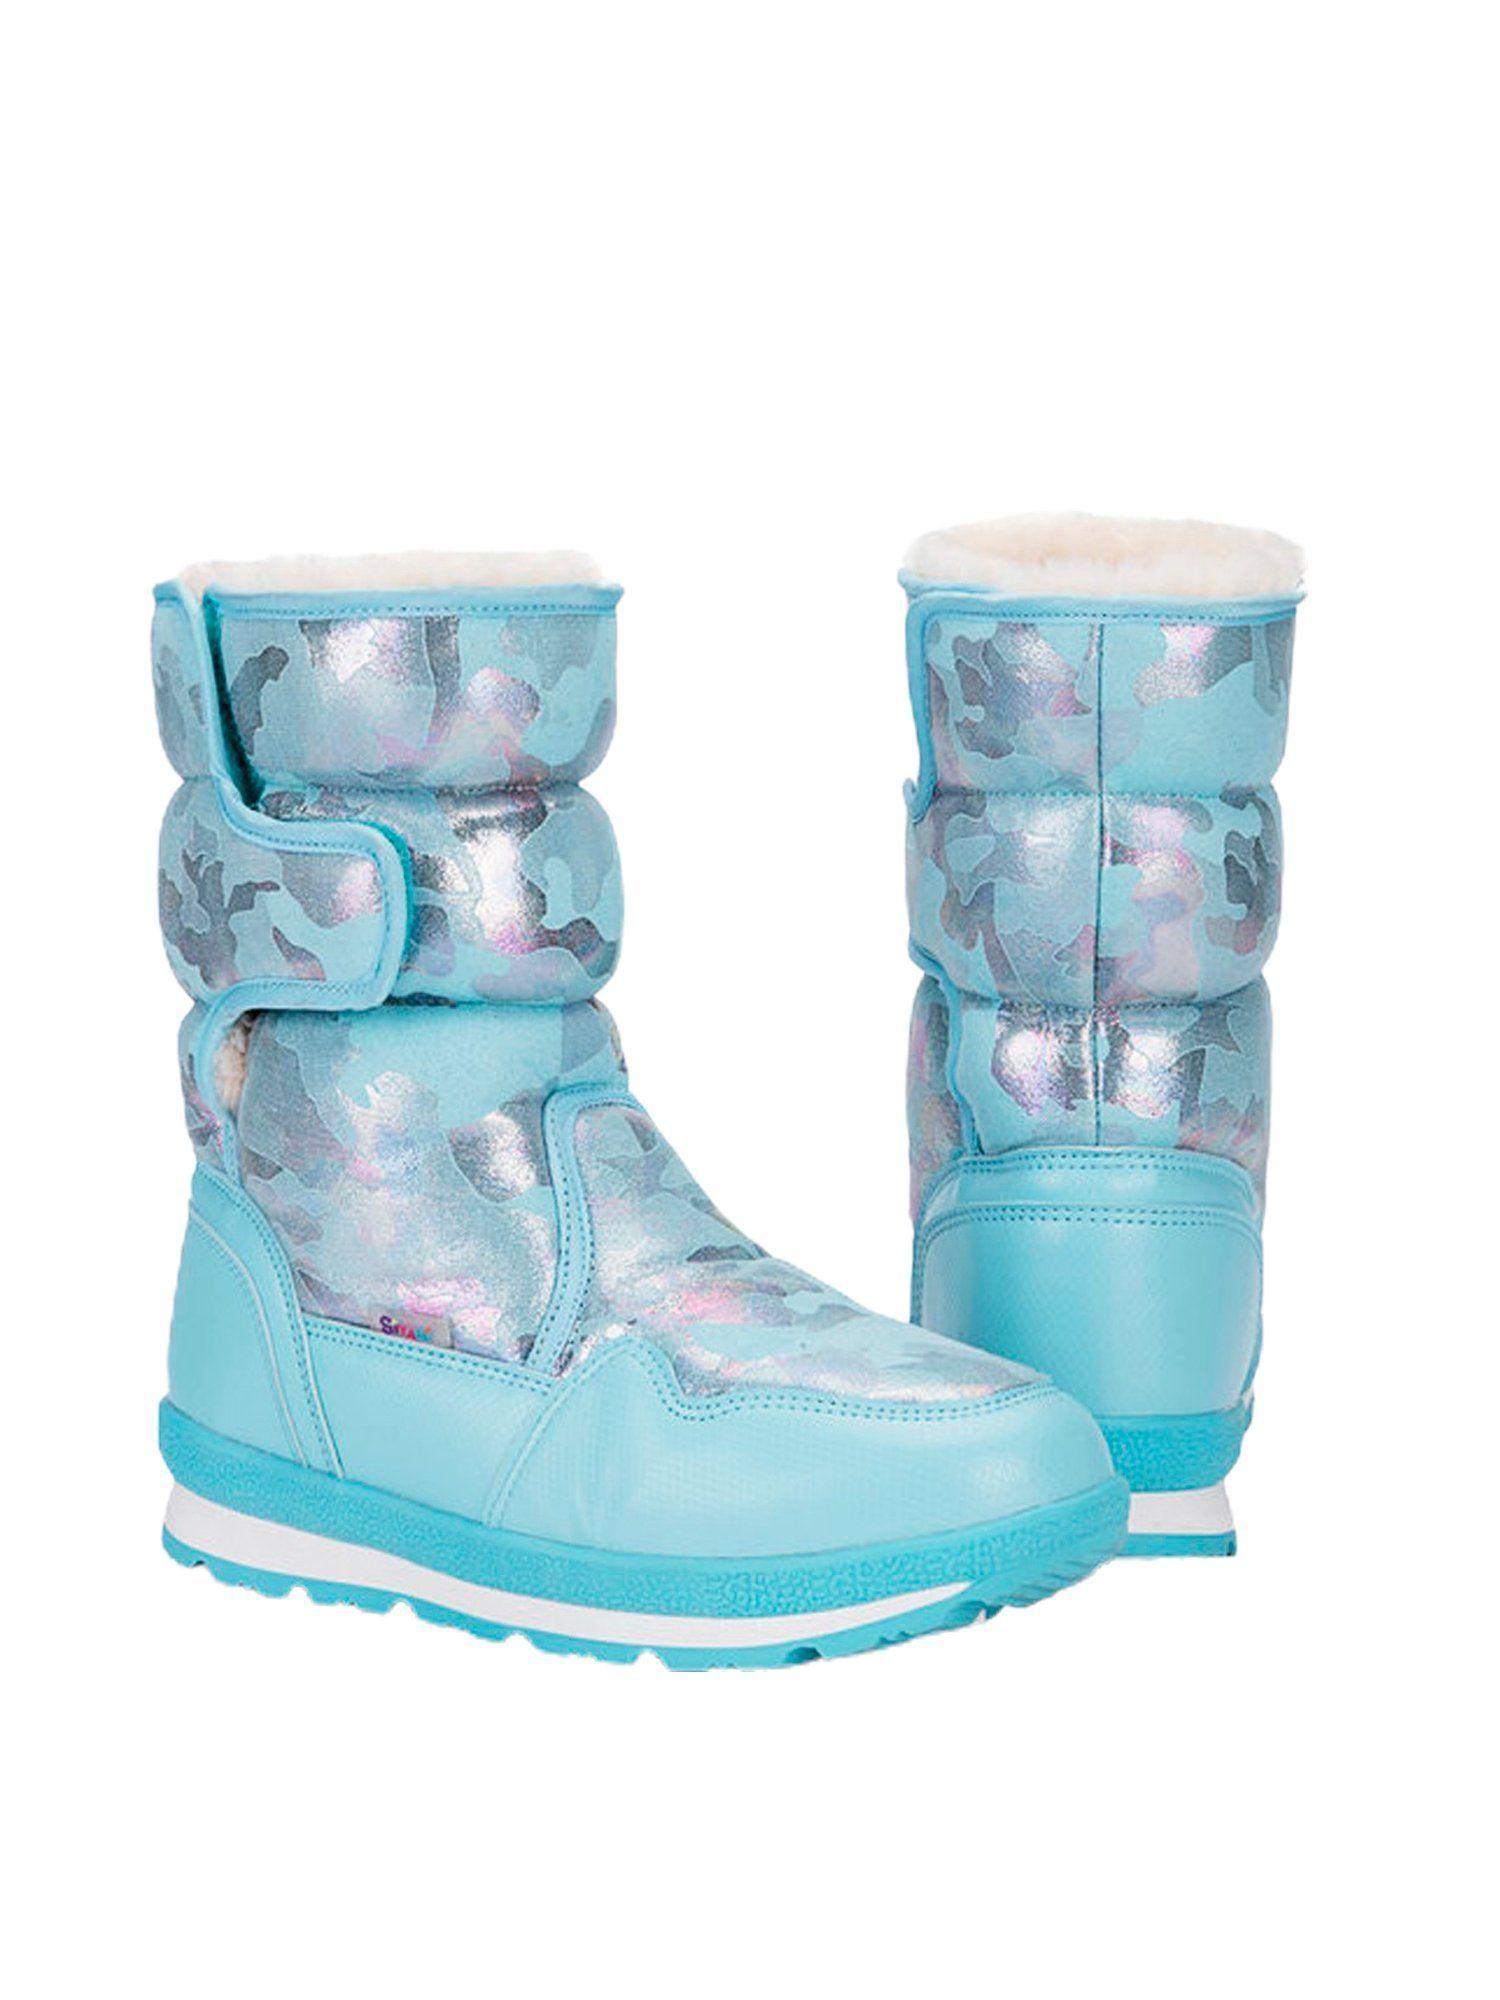 blue-glam-kids-winter-snowboots